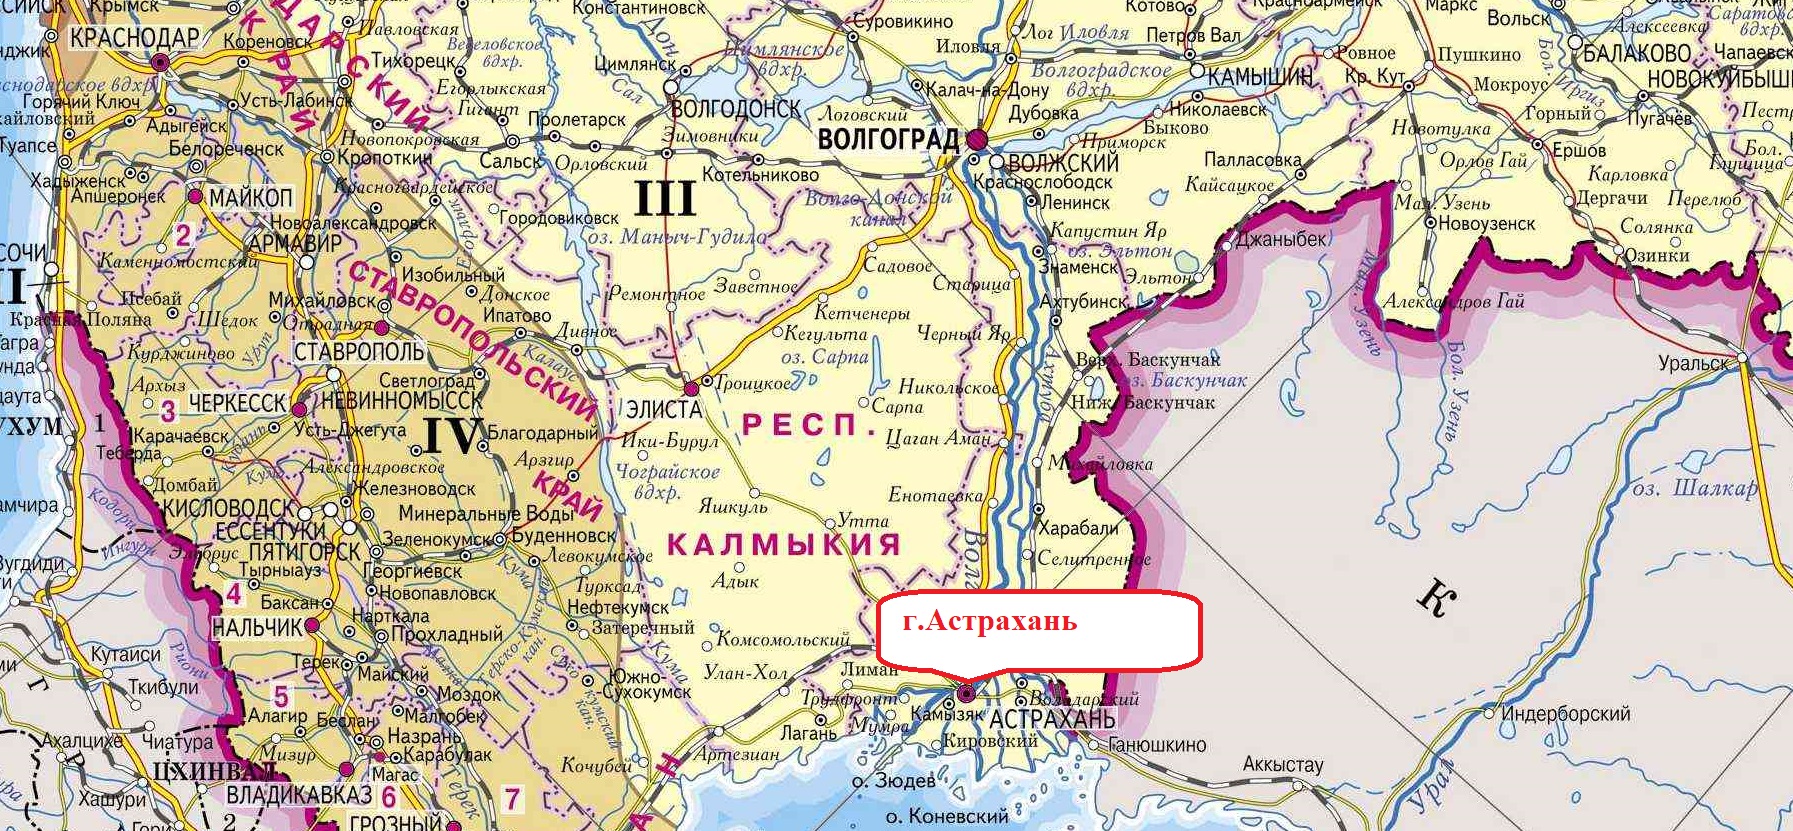 Карта знаменска астраханской области